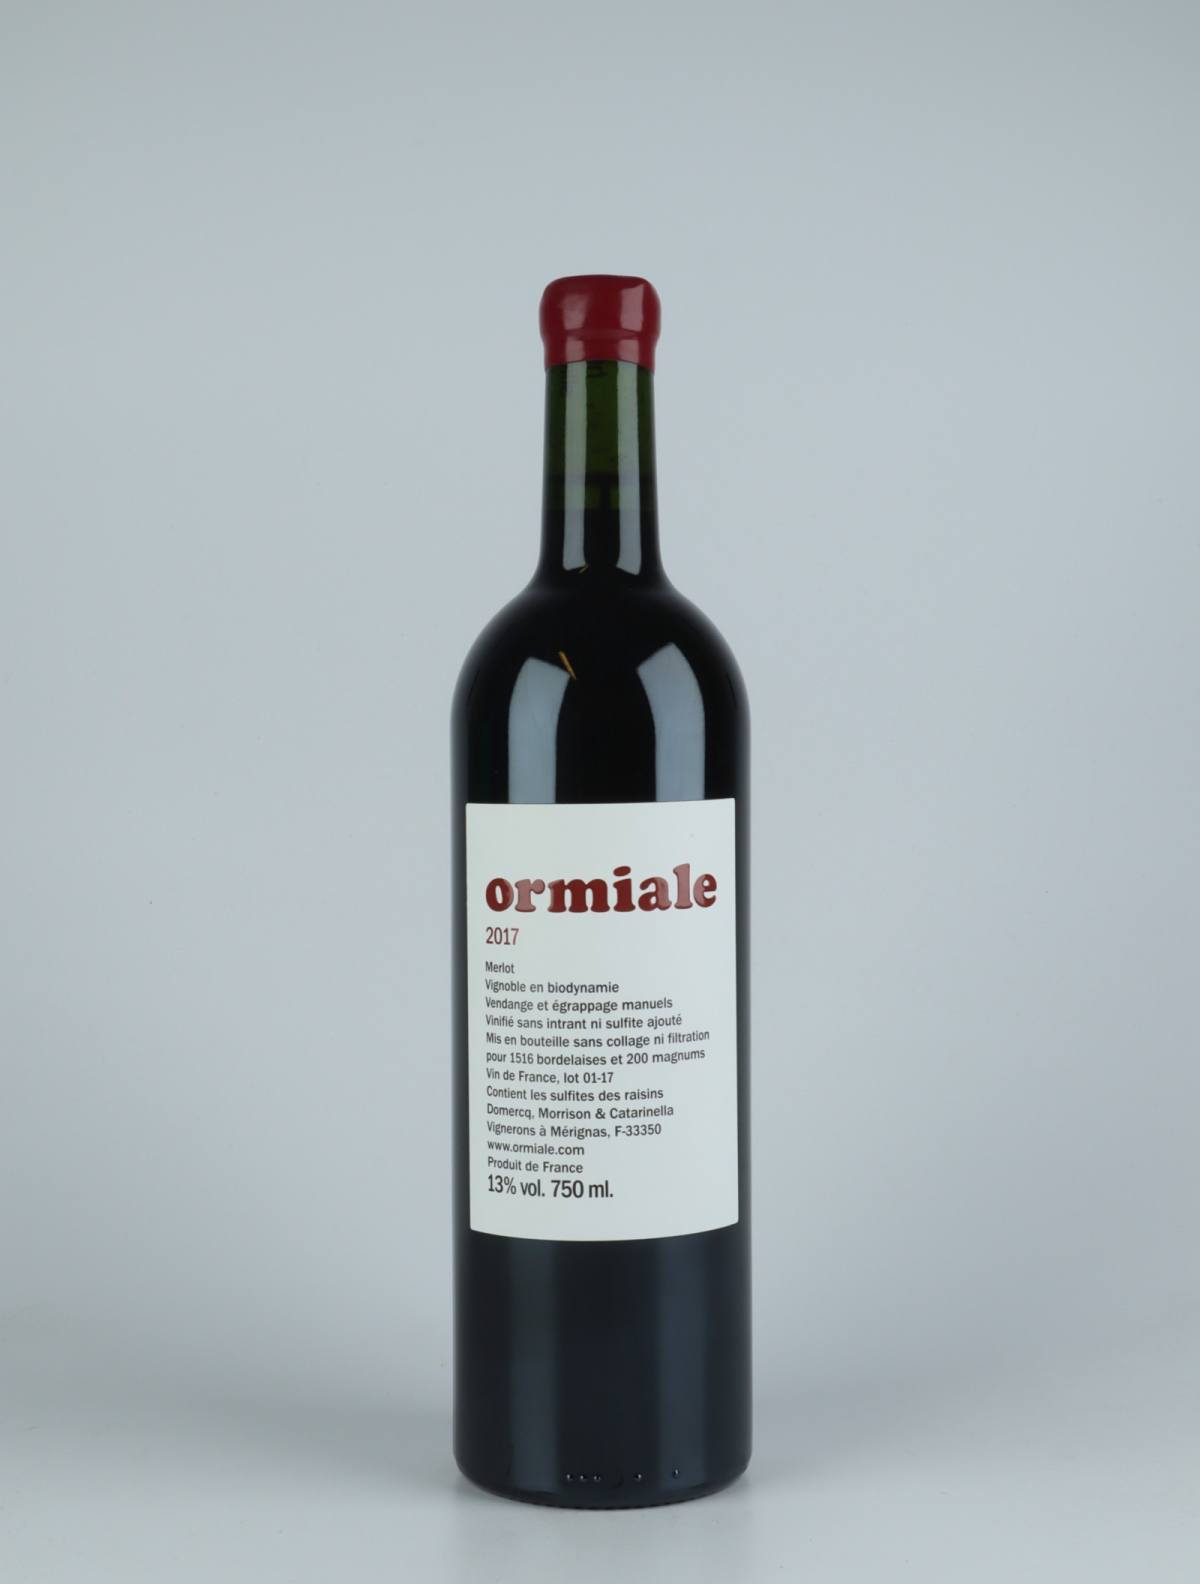 En flaske 2017 Ormiale Rødvin fra Ormiale, Bordeaux i Frankrig